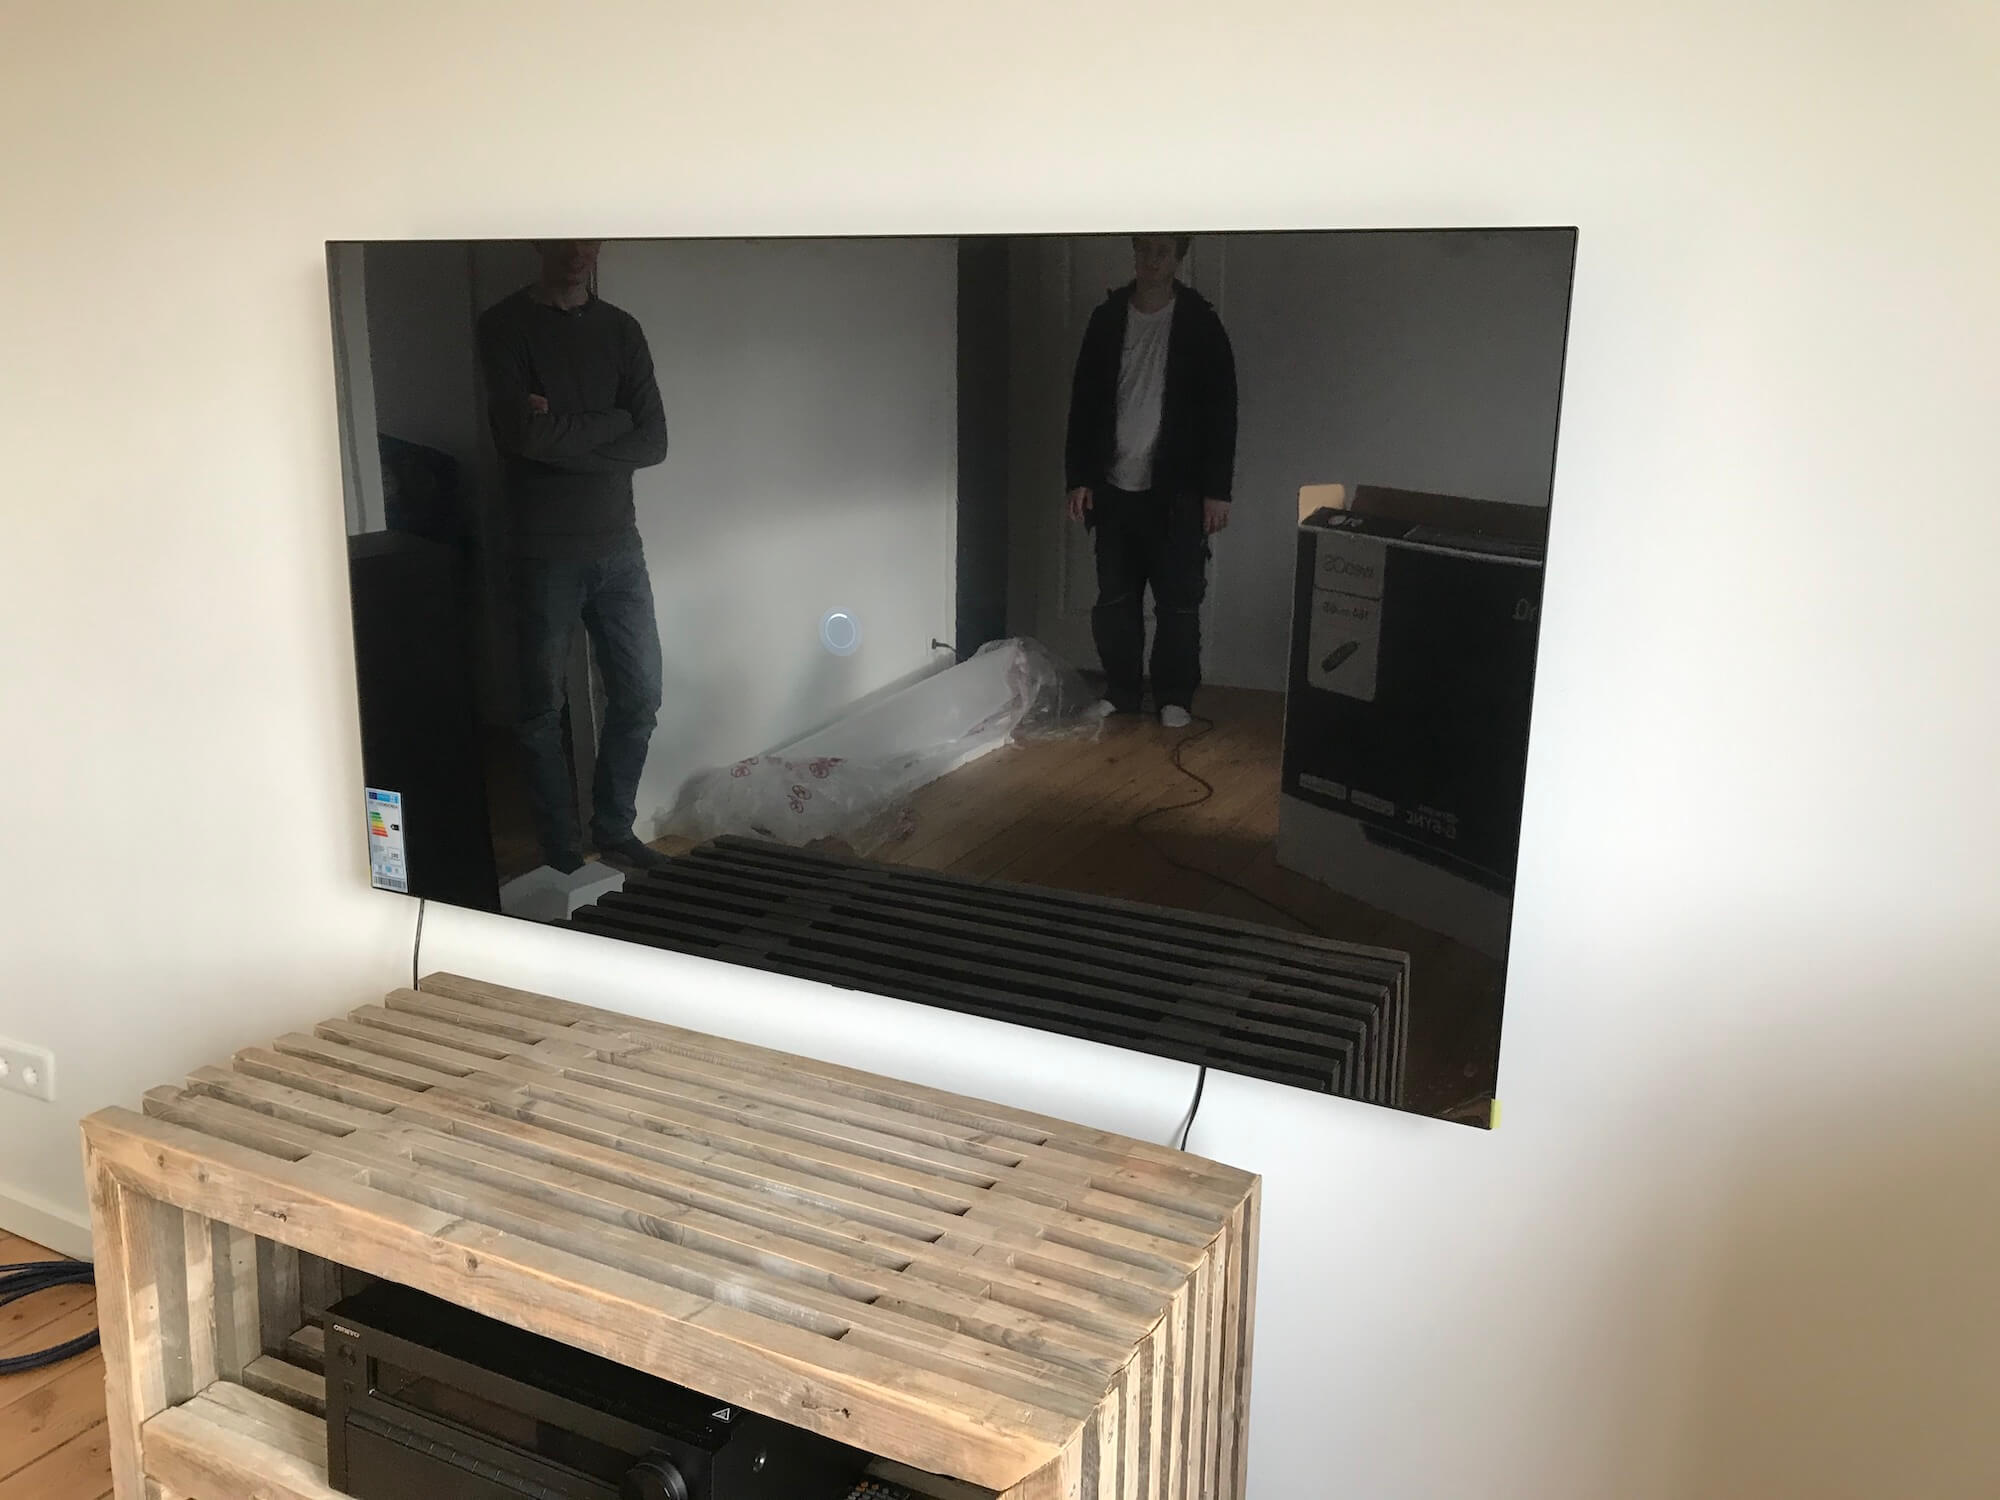 Væg-montering af 65'' LG TV